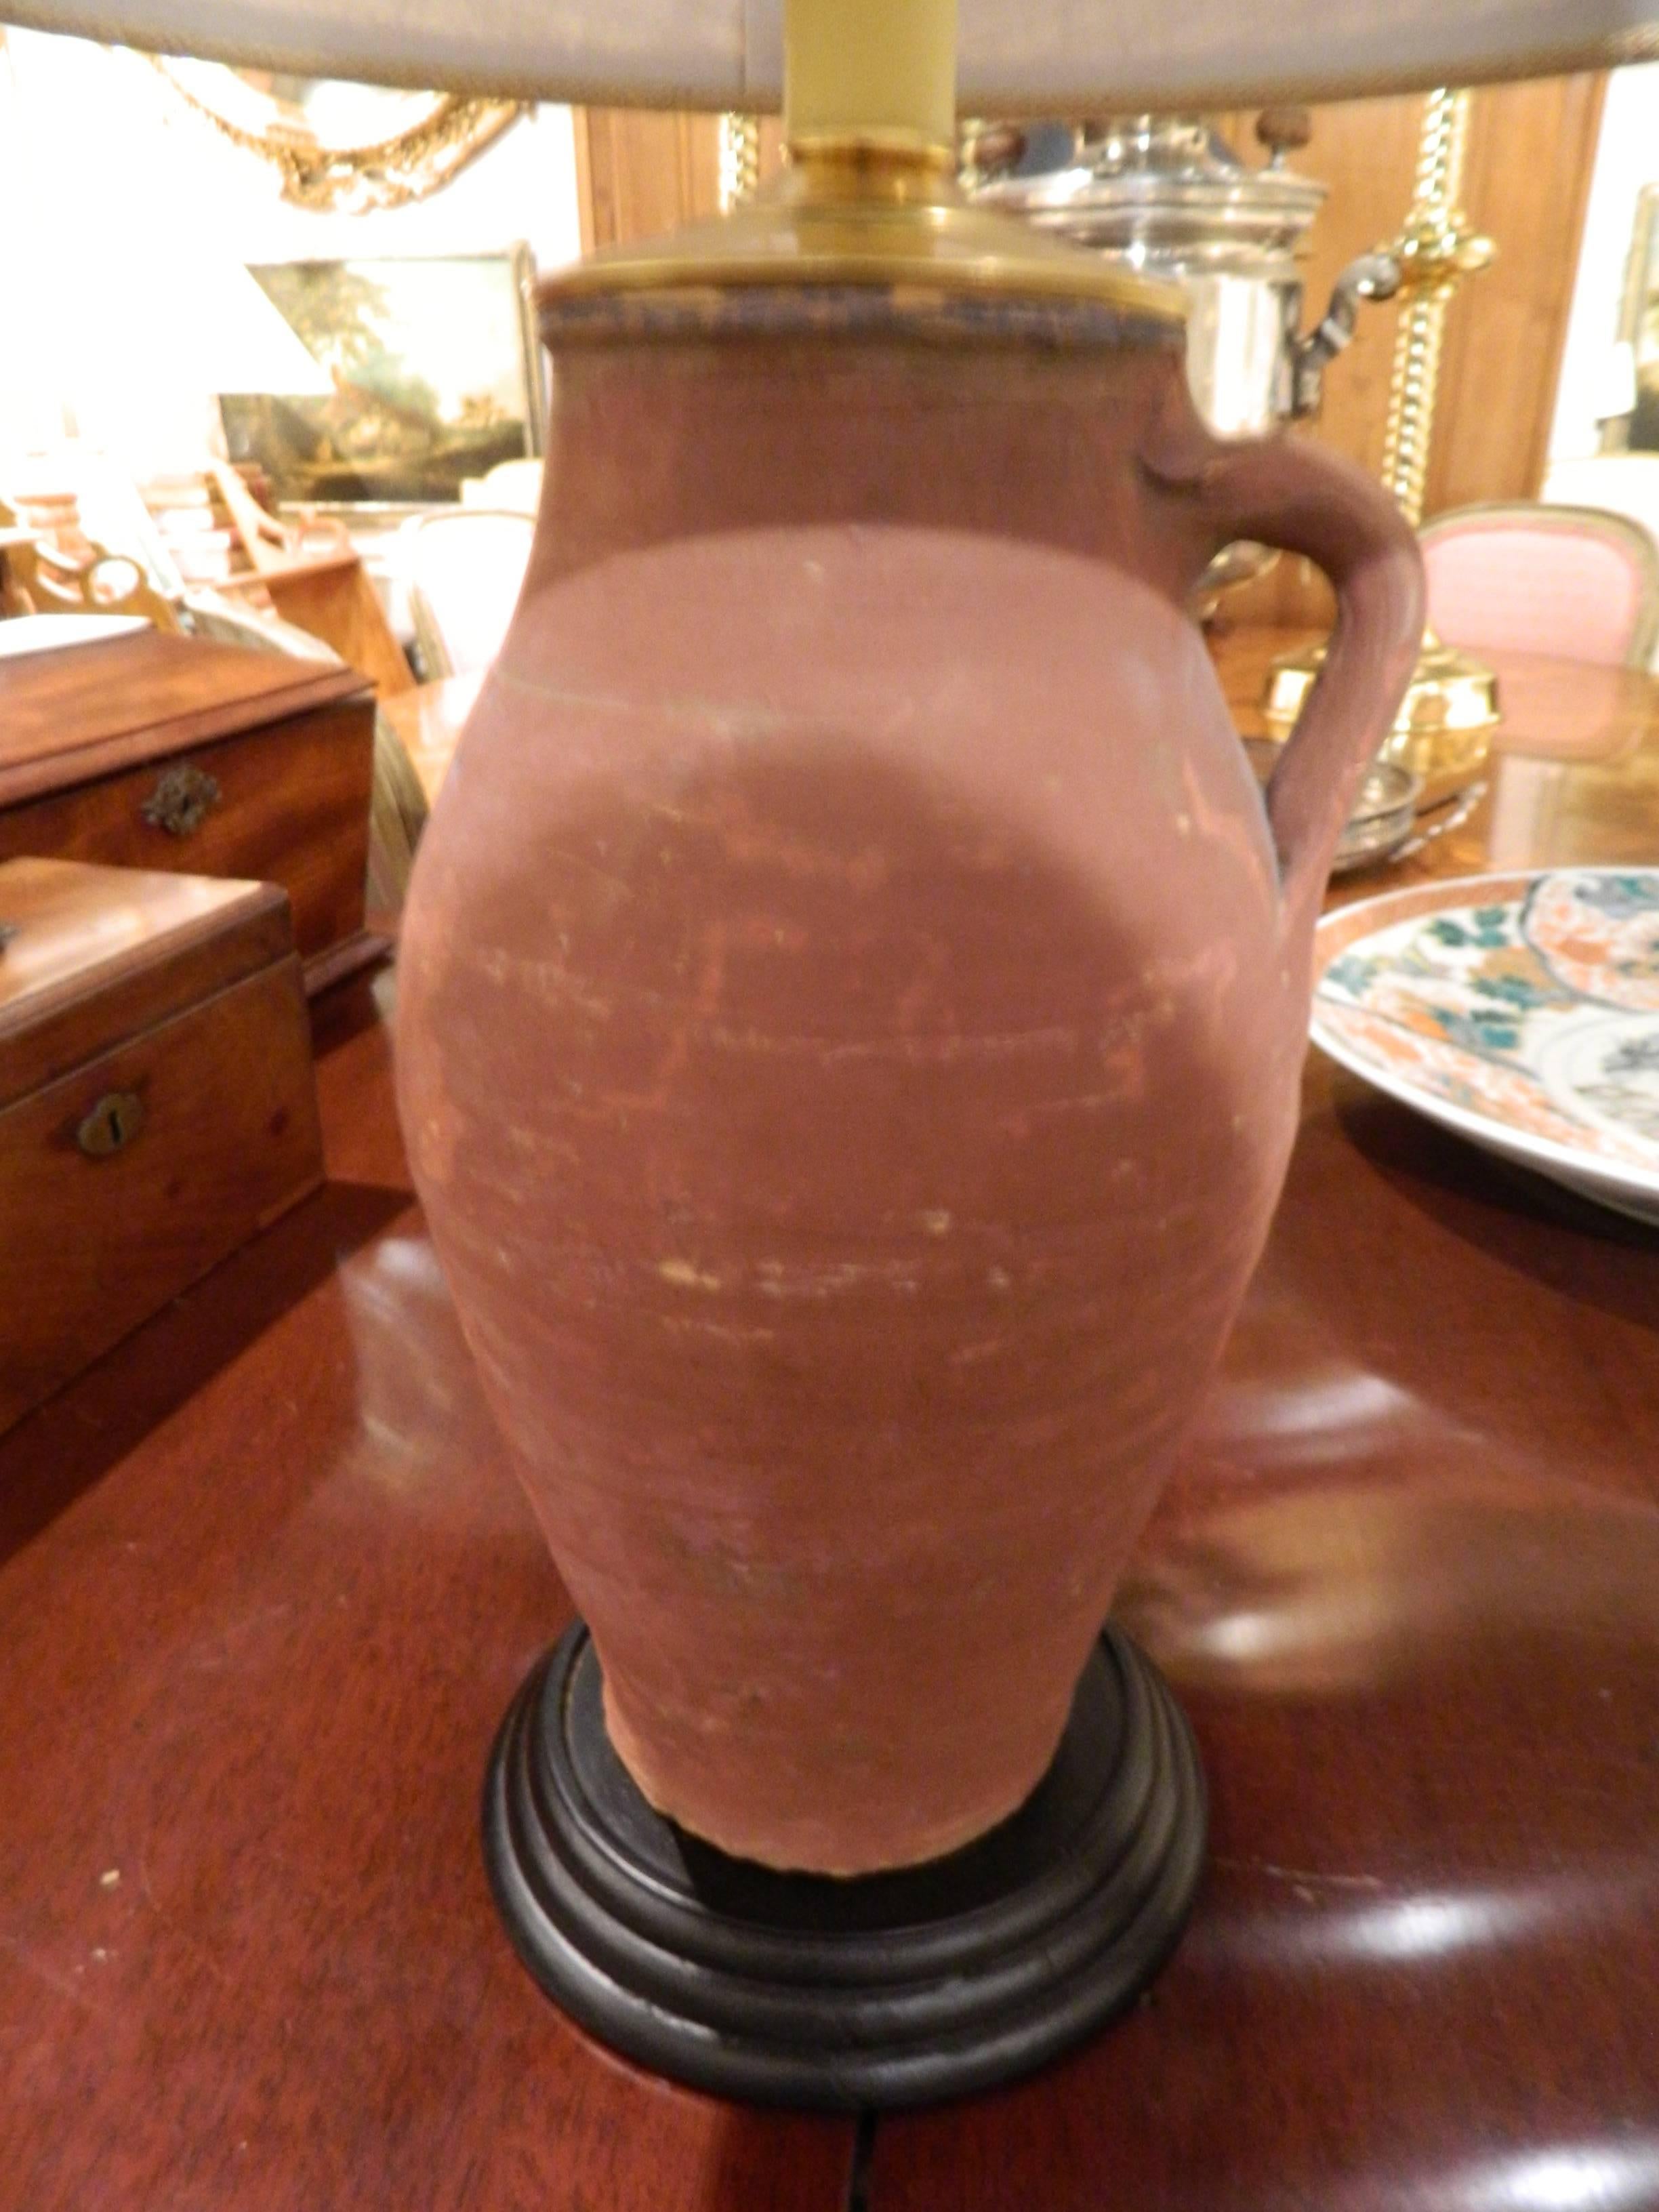 Paire de jarres à huile italiennes en terre cuite avec poignées simples et adaptées comme lampes, 19e siècle. Equipé d'abat-jour en toile de jute.  La hauteur des bases, sans le raccord de l'ampoule ni la harpe, est de 12,75